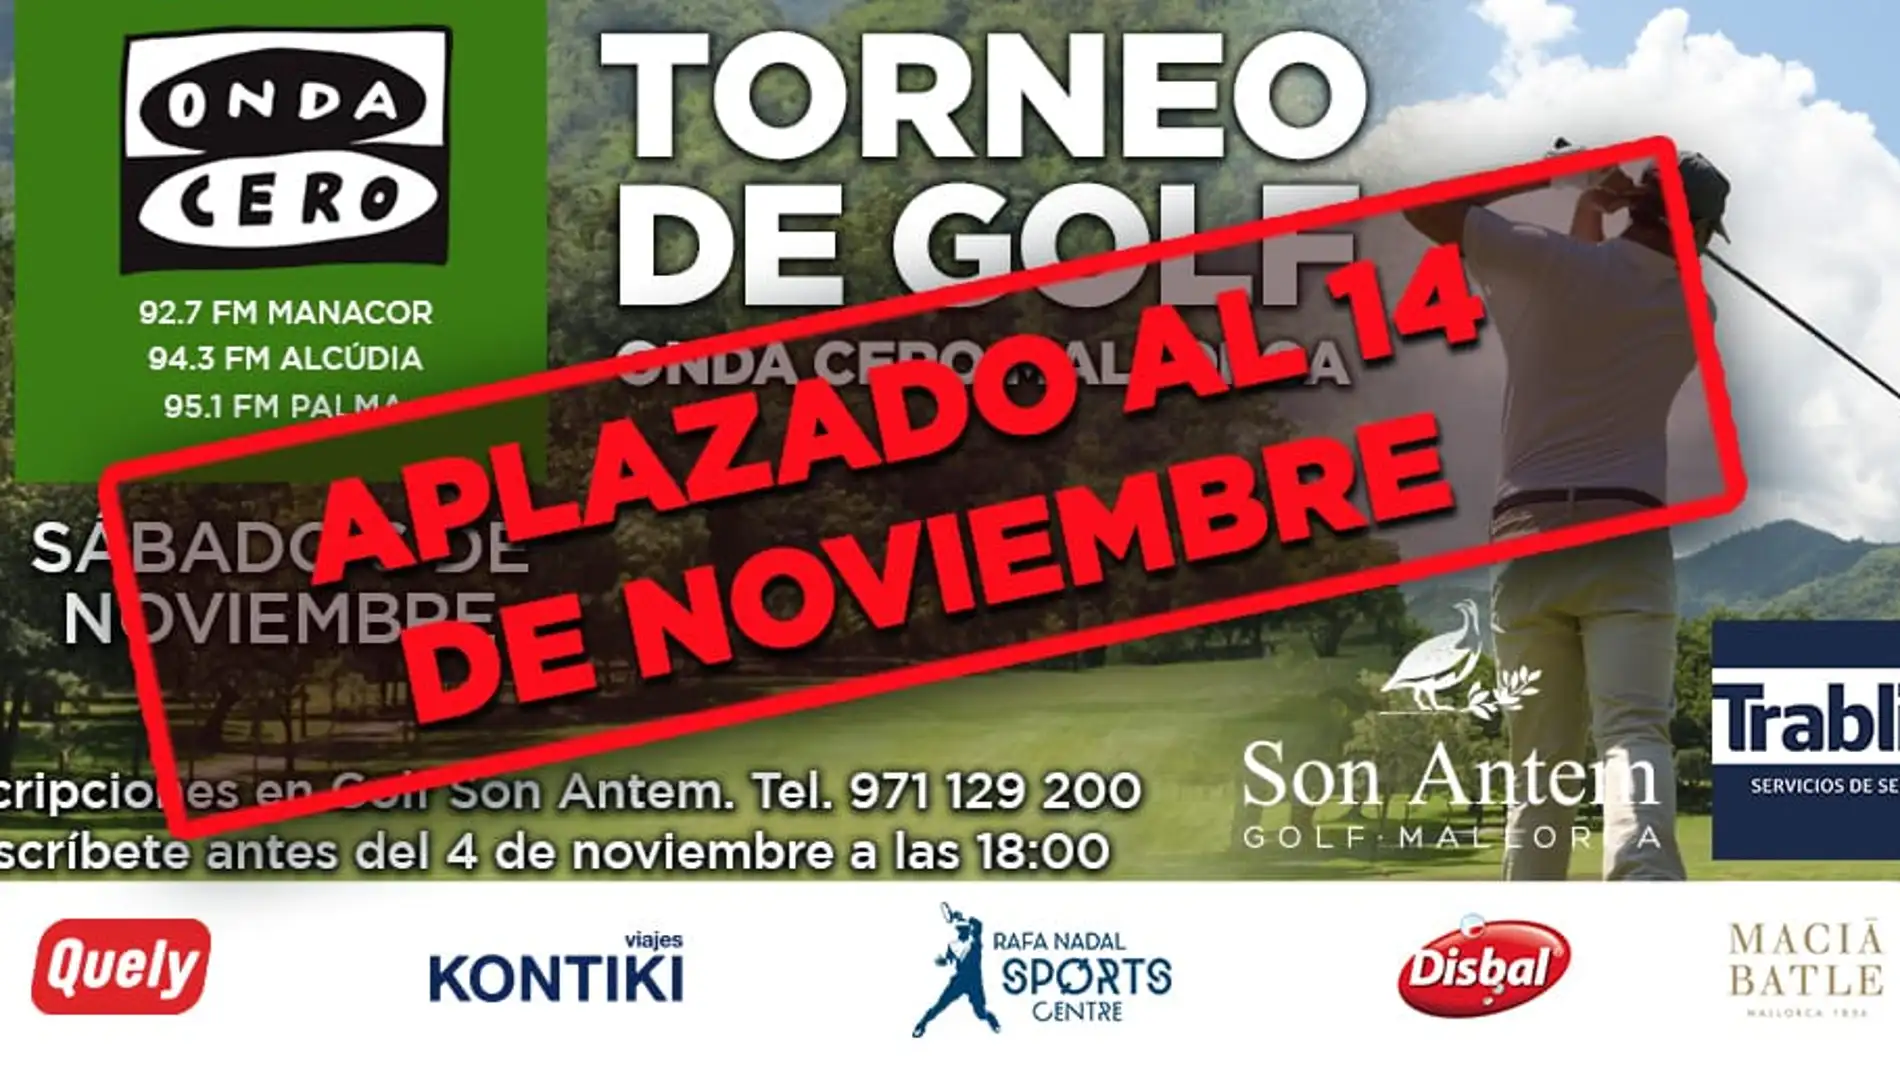 Aplazado el torneo de Golf de Onda Cero Mallorca.